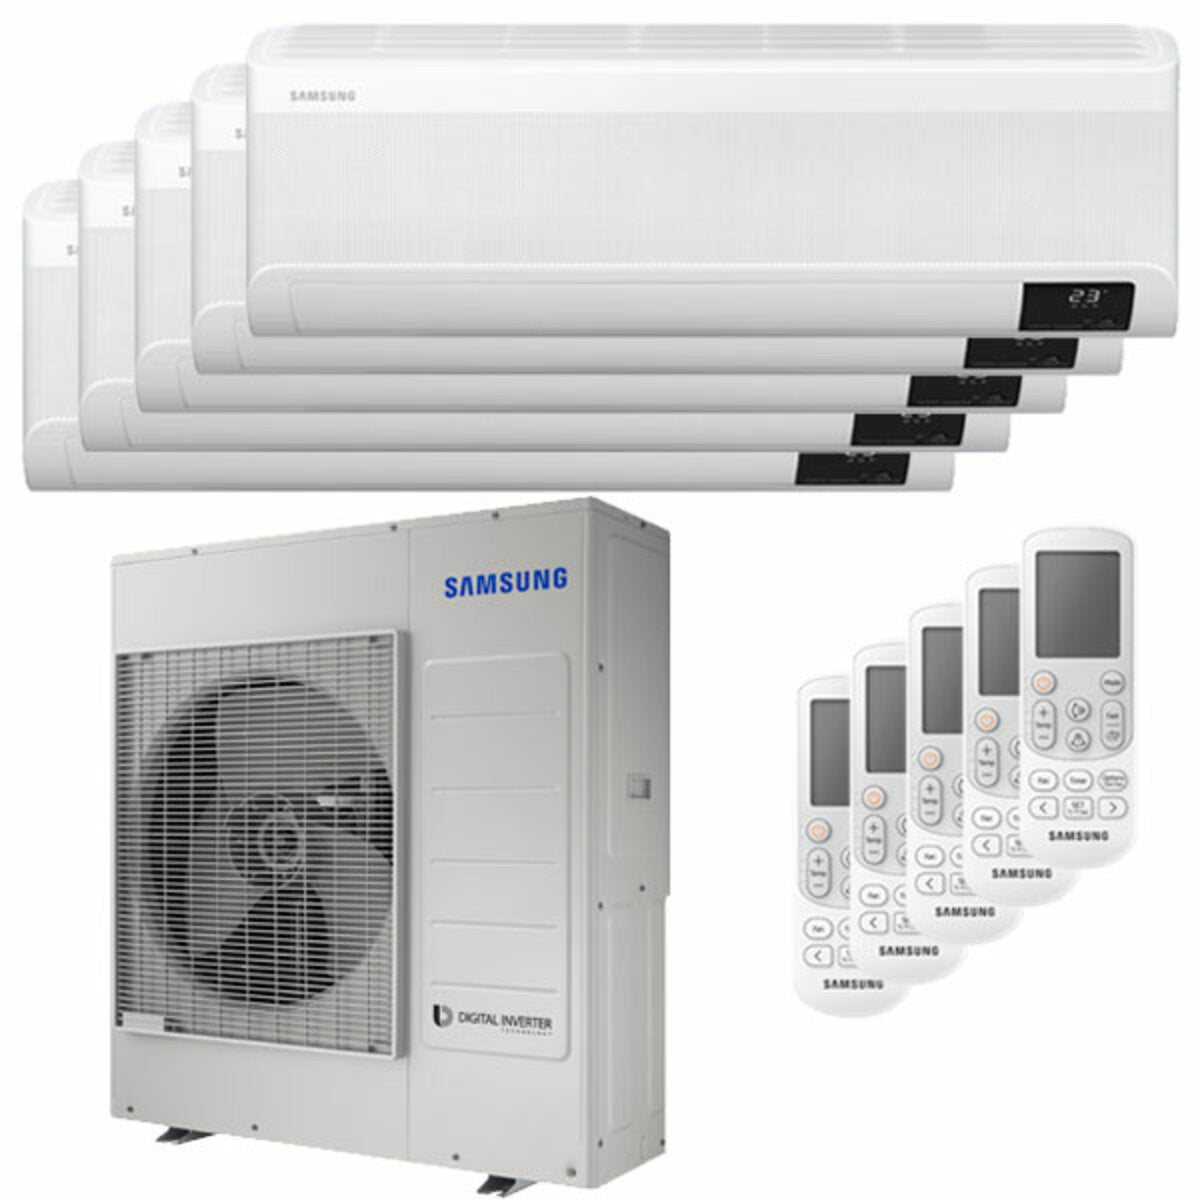 Samsung windfree Klimaanlage Avant Penta Split 7000 + 9000 + 12000 + 12000 + 12000 BTU Inverter A++ WLAN Außengerät 10,0 kW